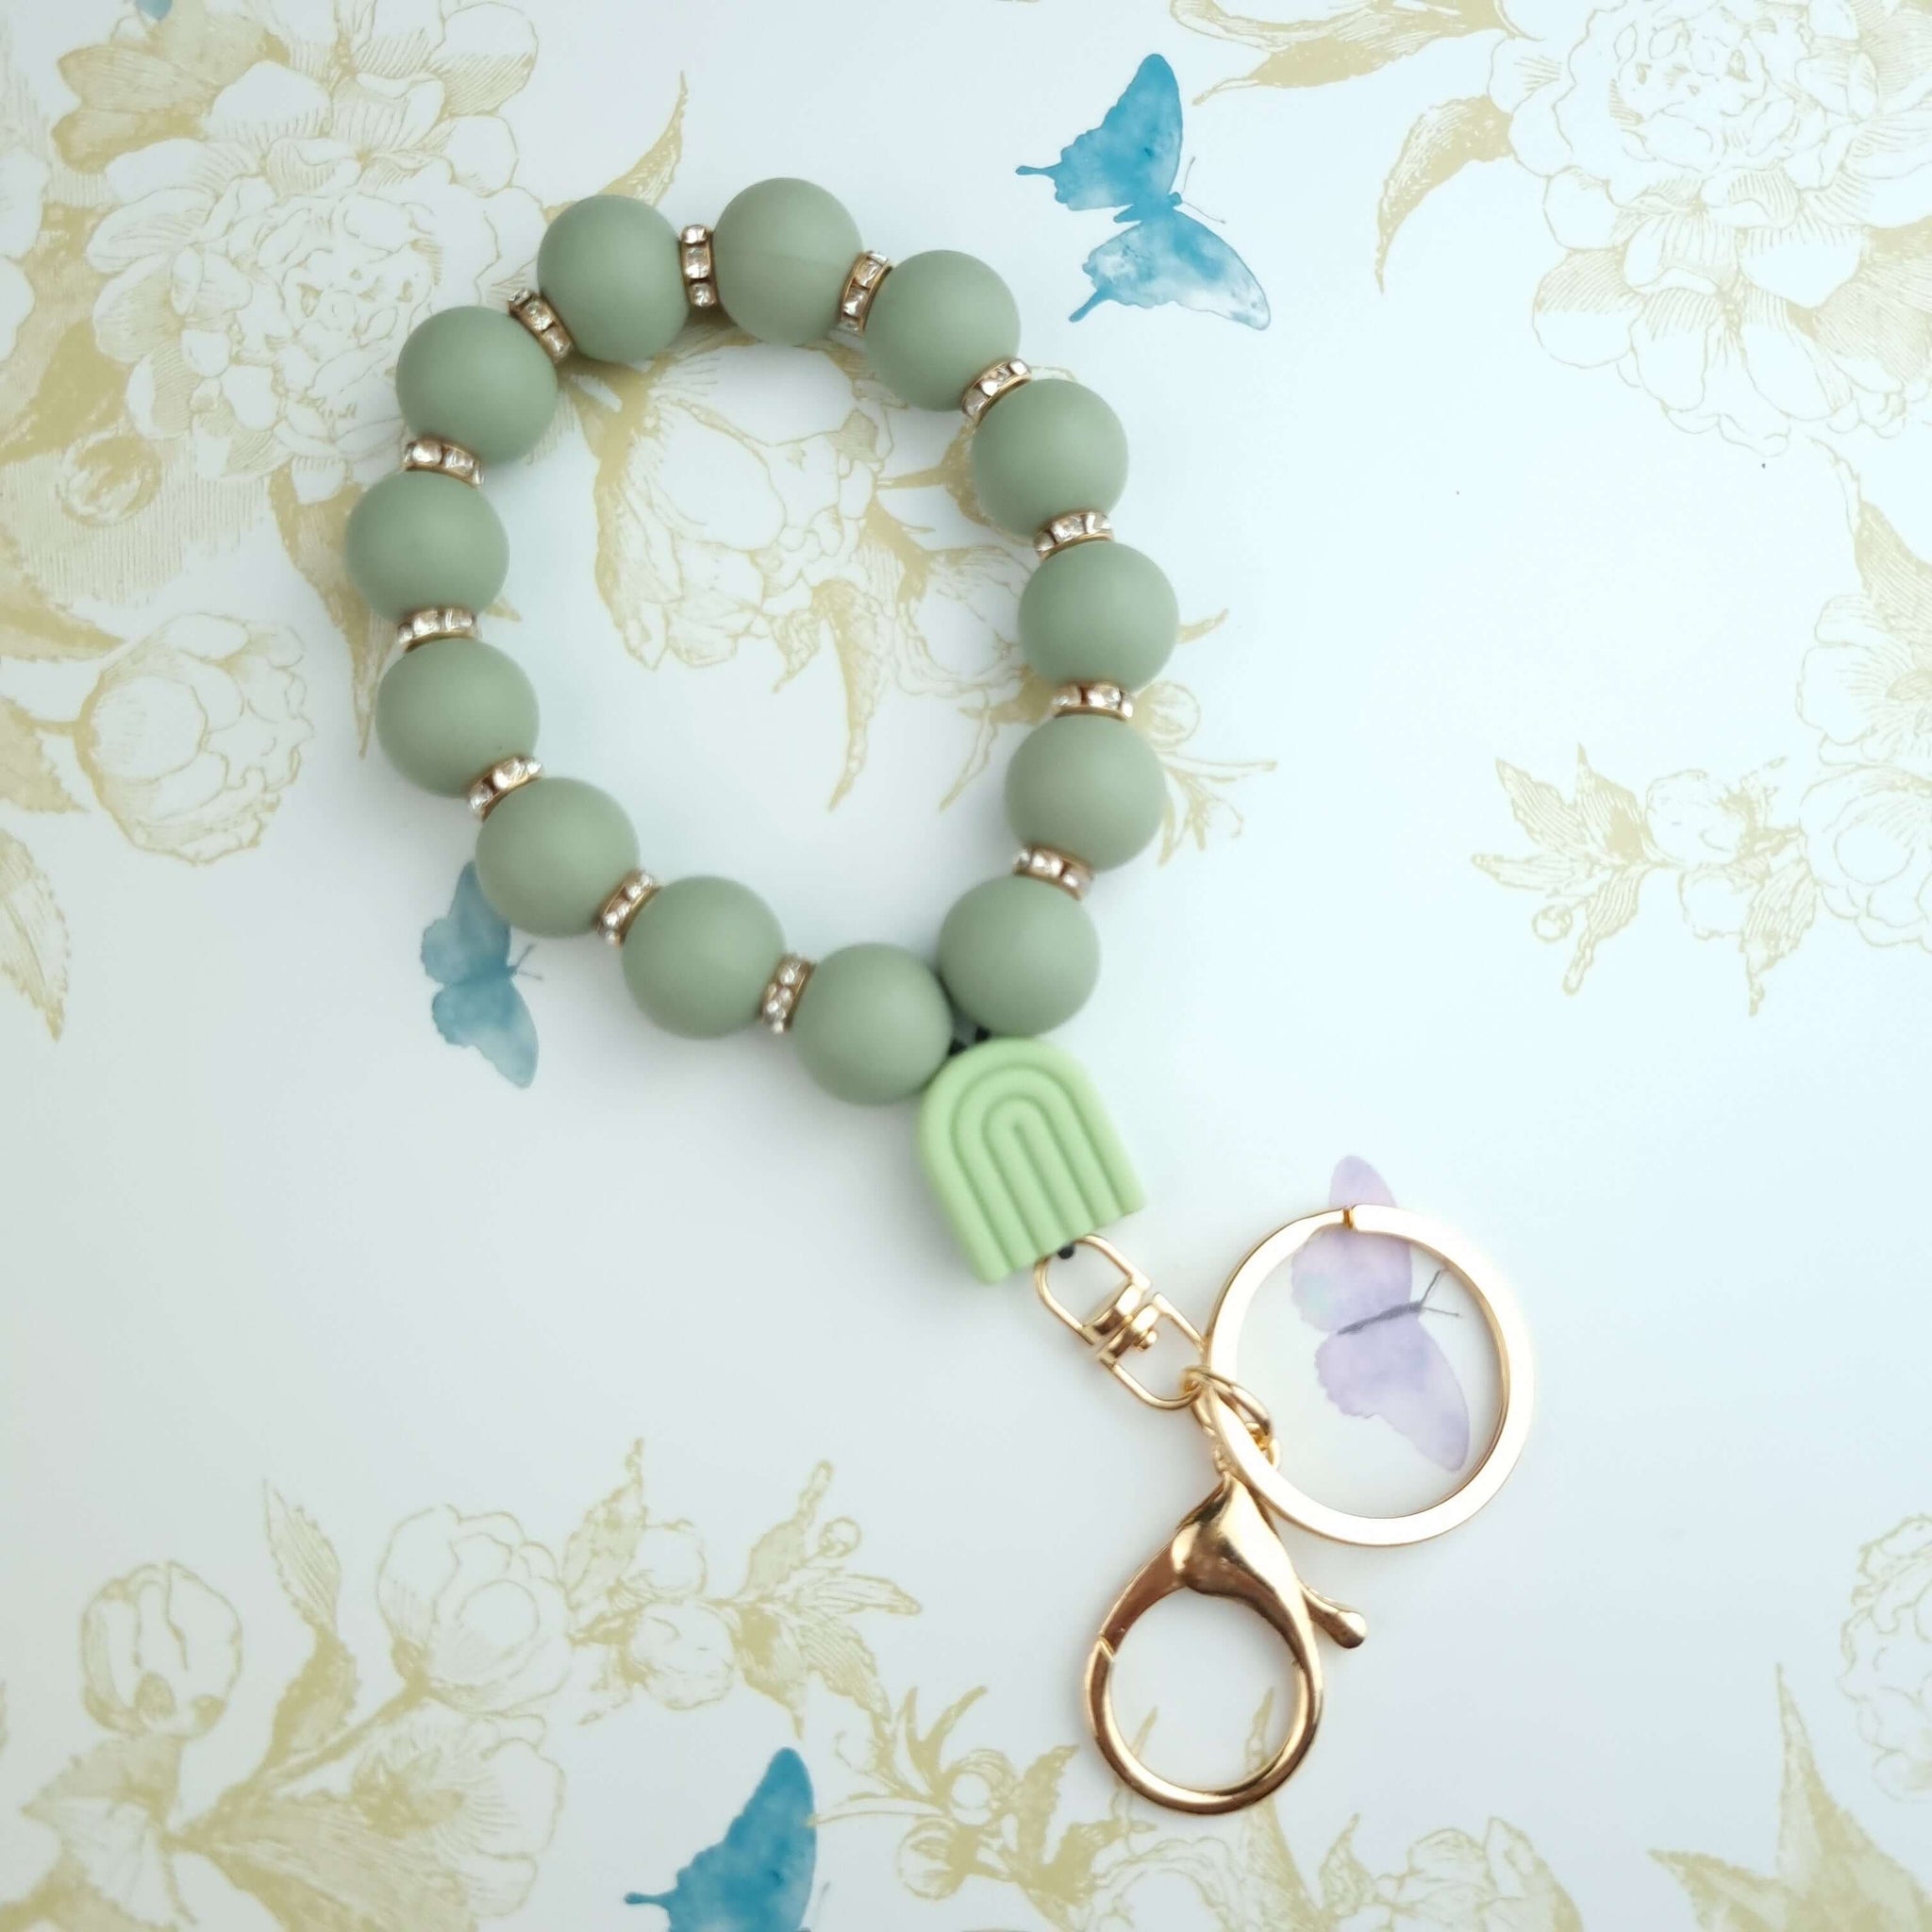 wristlet bracelet keyring in sage green